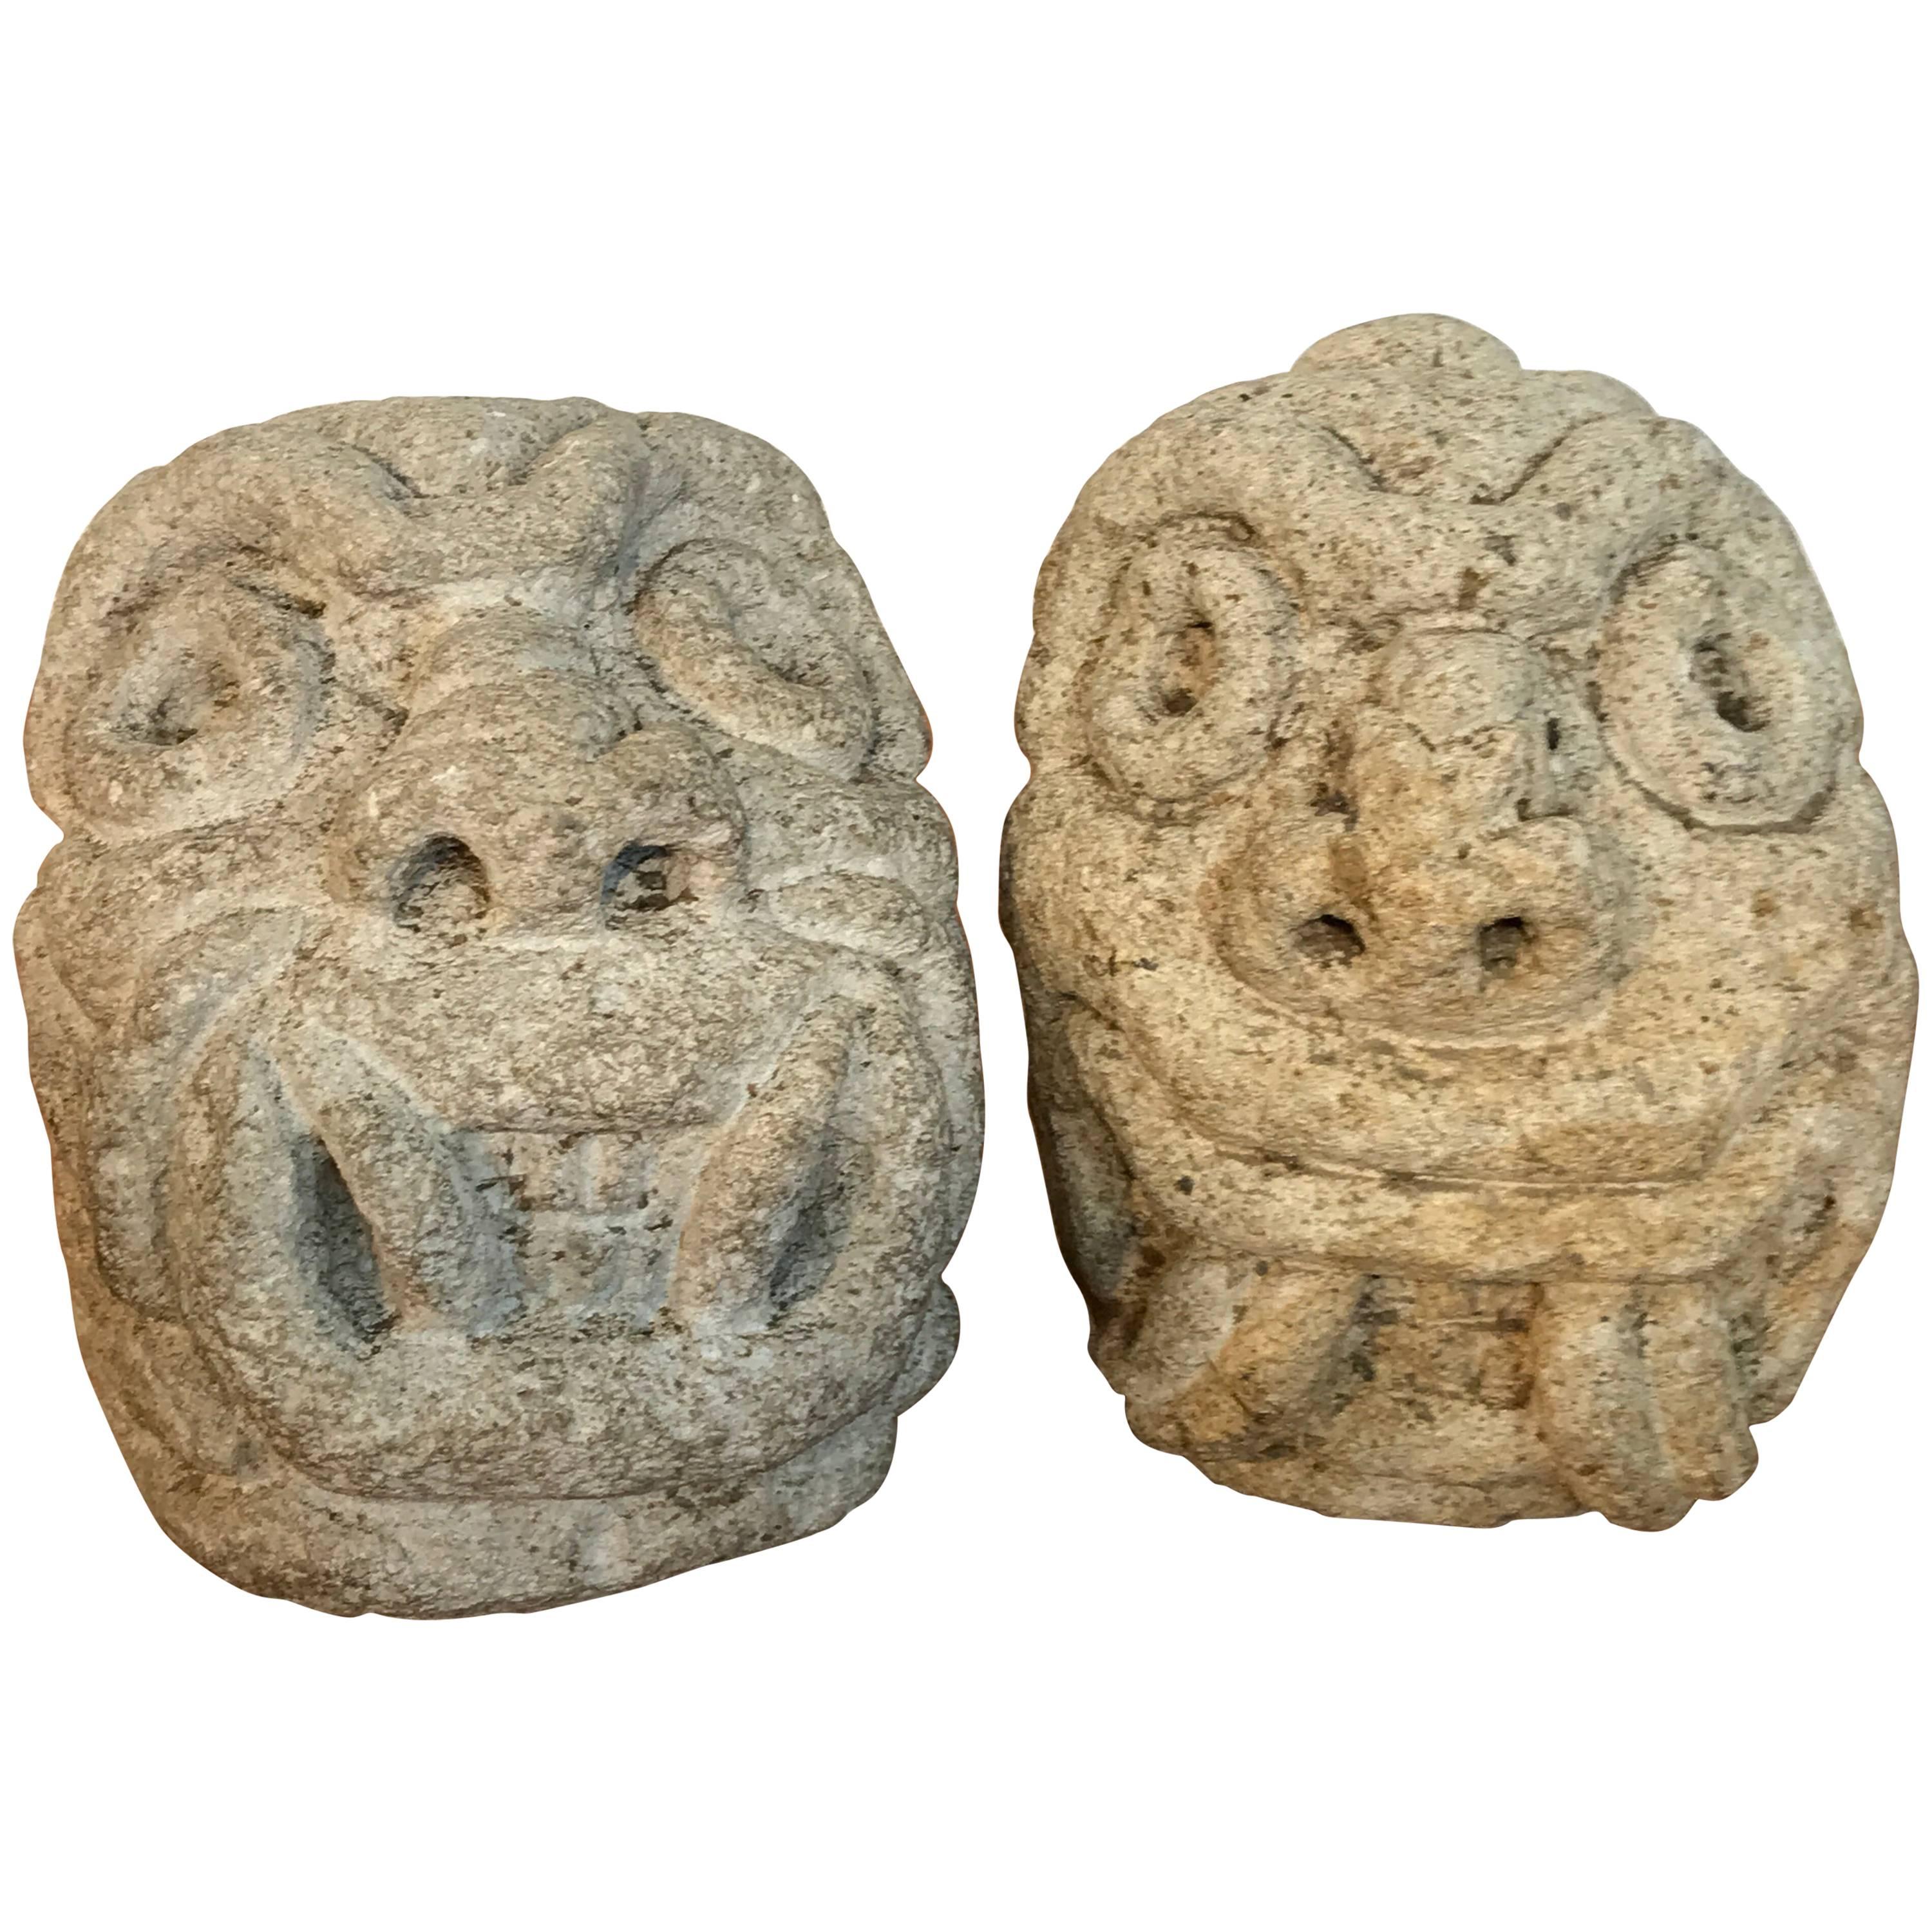 Deux sculptures ou éléments architecturaux en pierre calcaire sculptés représentant une divinité mauresque